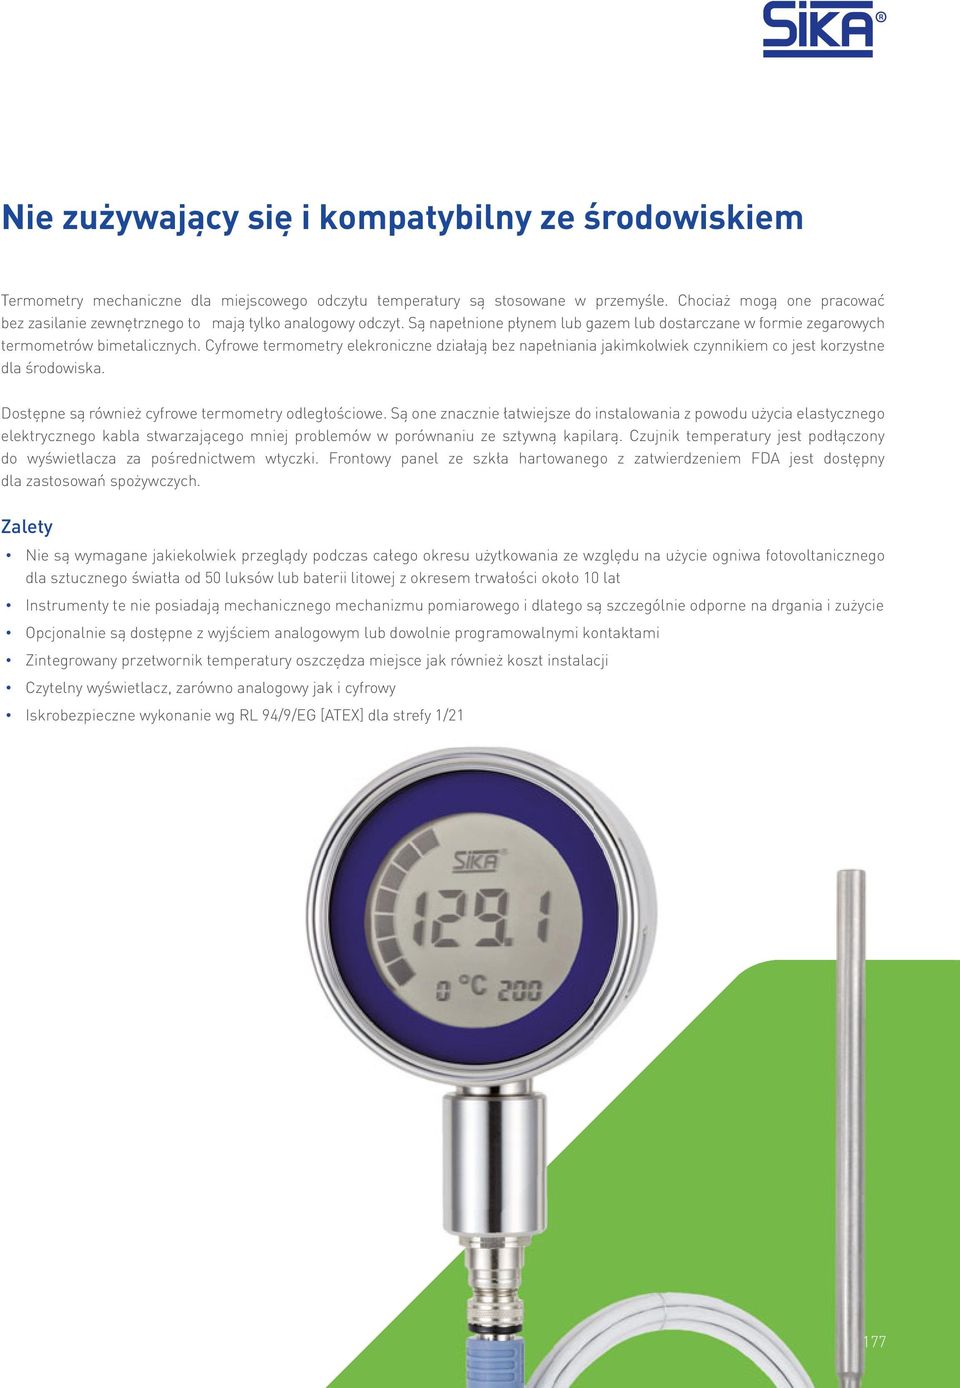 Cyfrowe termometry elekroniczne działają bez napełniania jakimkolwiek czynnikiem co jest korzystne dla środowiska. Dostępne są również cyfrowe termometry odległościowe.